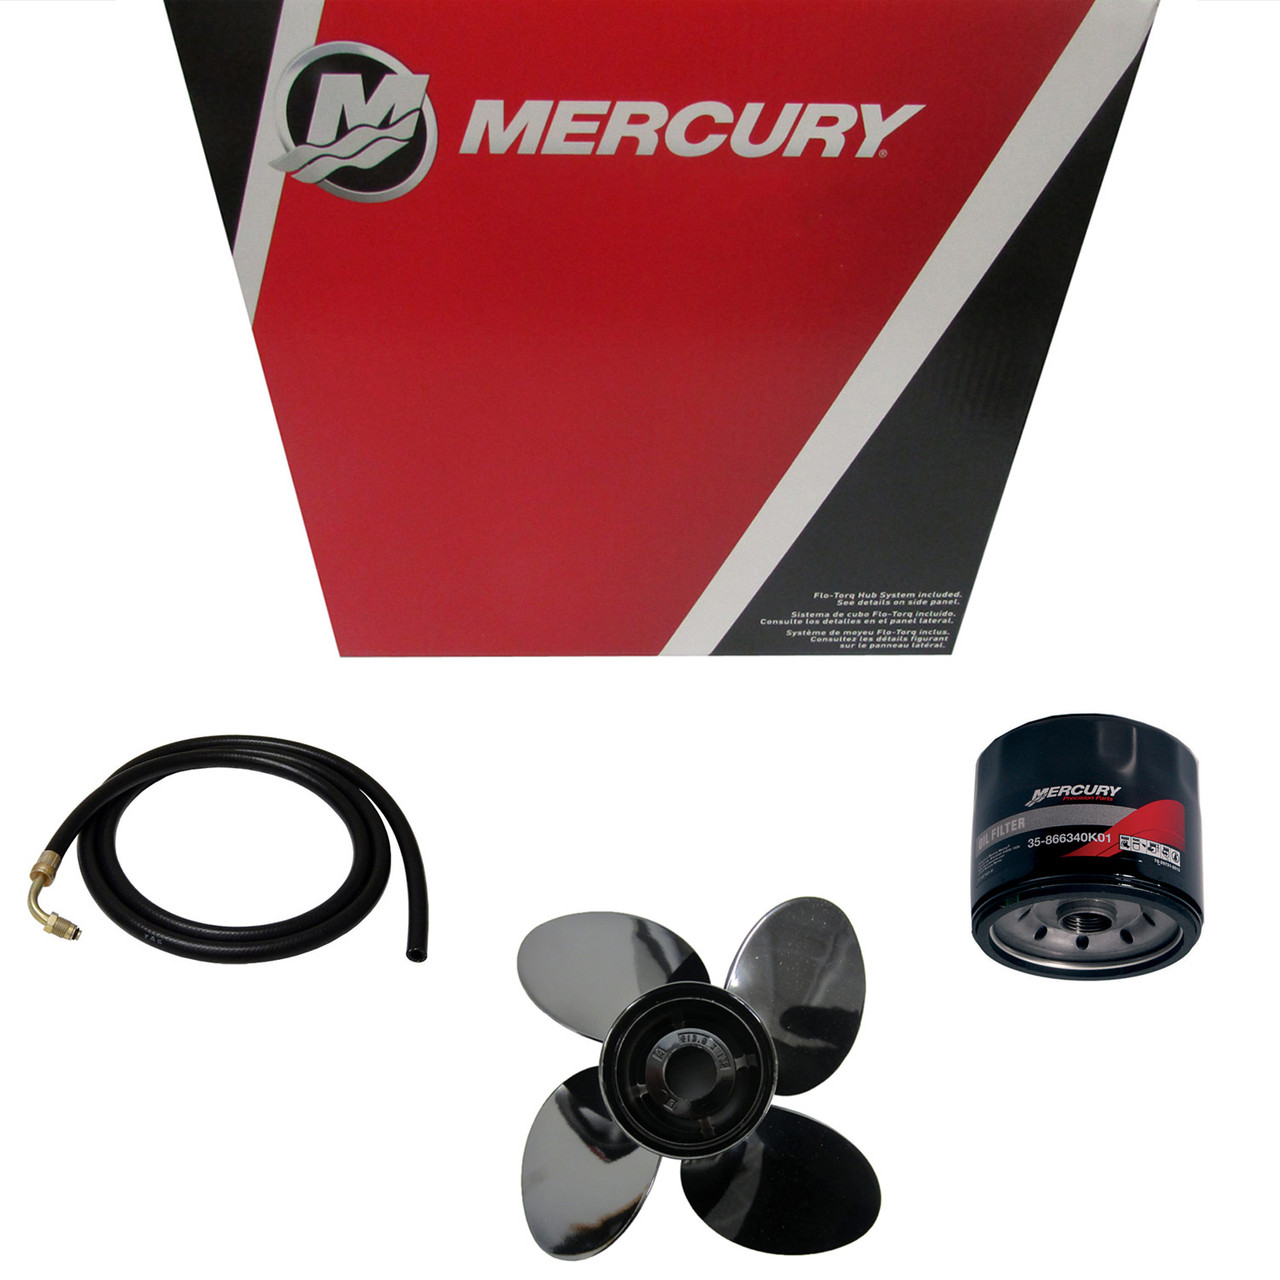 Mercury Marine / Mercruiser New OEM Impeller, 896332063